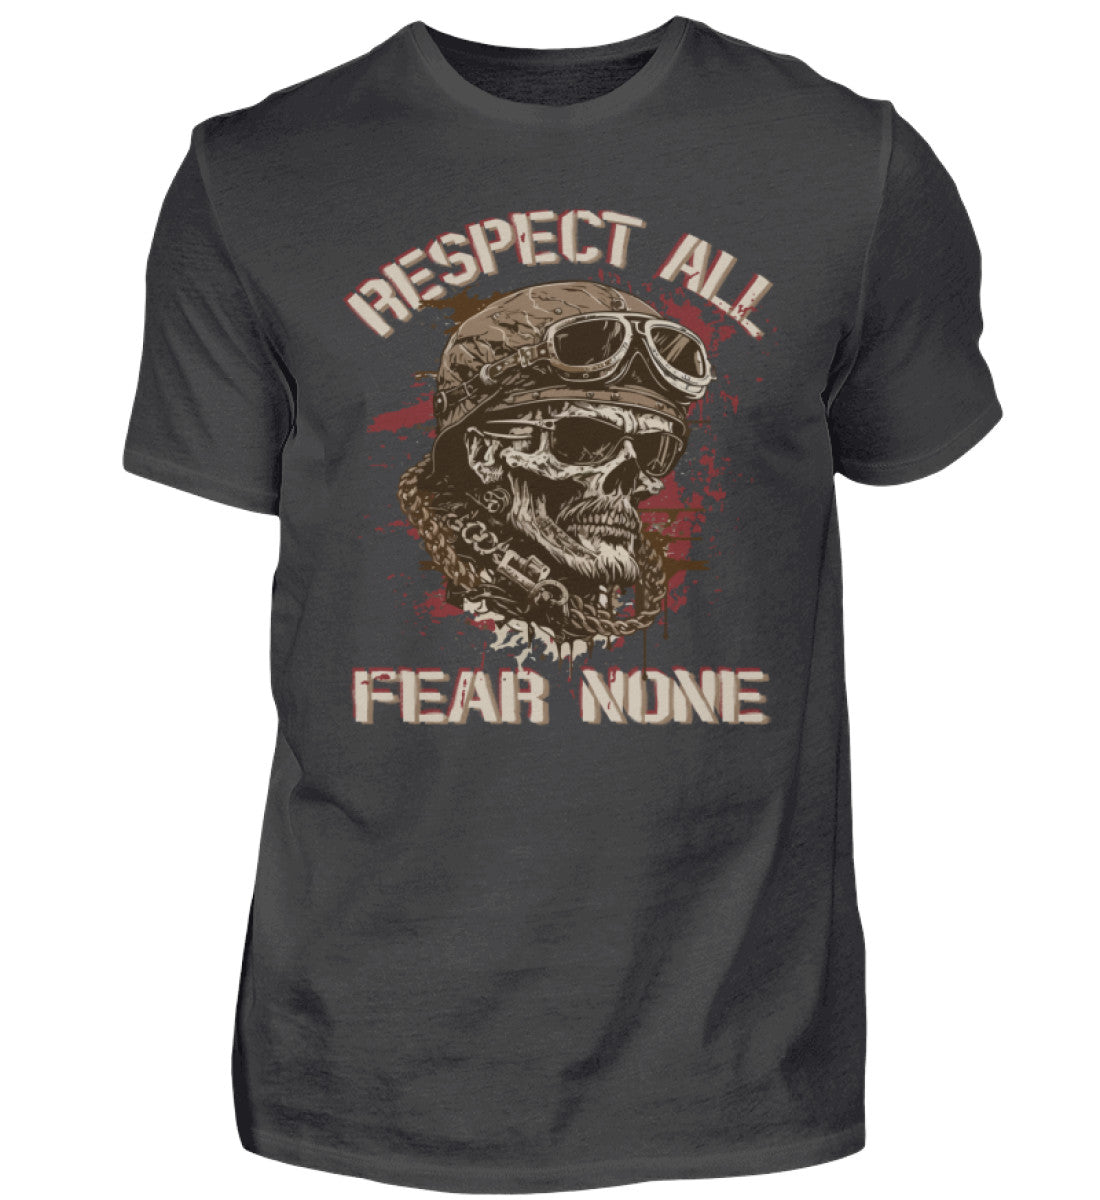 Ein Biker T-Shirt für Motorradfahrer von Wingbikers mit dem Aufdruck, Respect All - Fear None, in dunkelgrau.